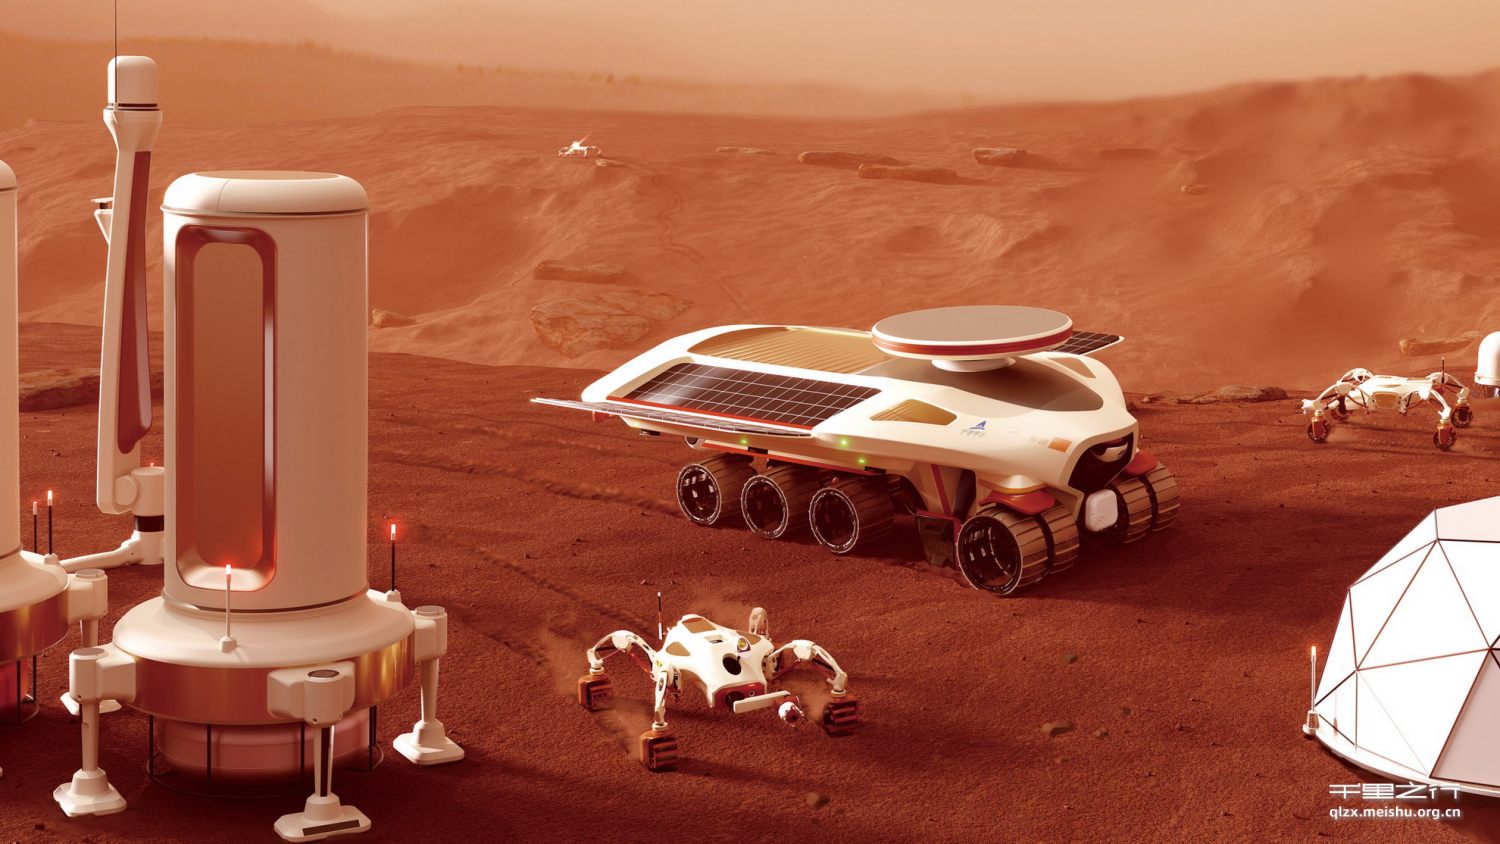 《为载人登火任务服务的火星车系统概念设计》